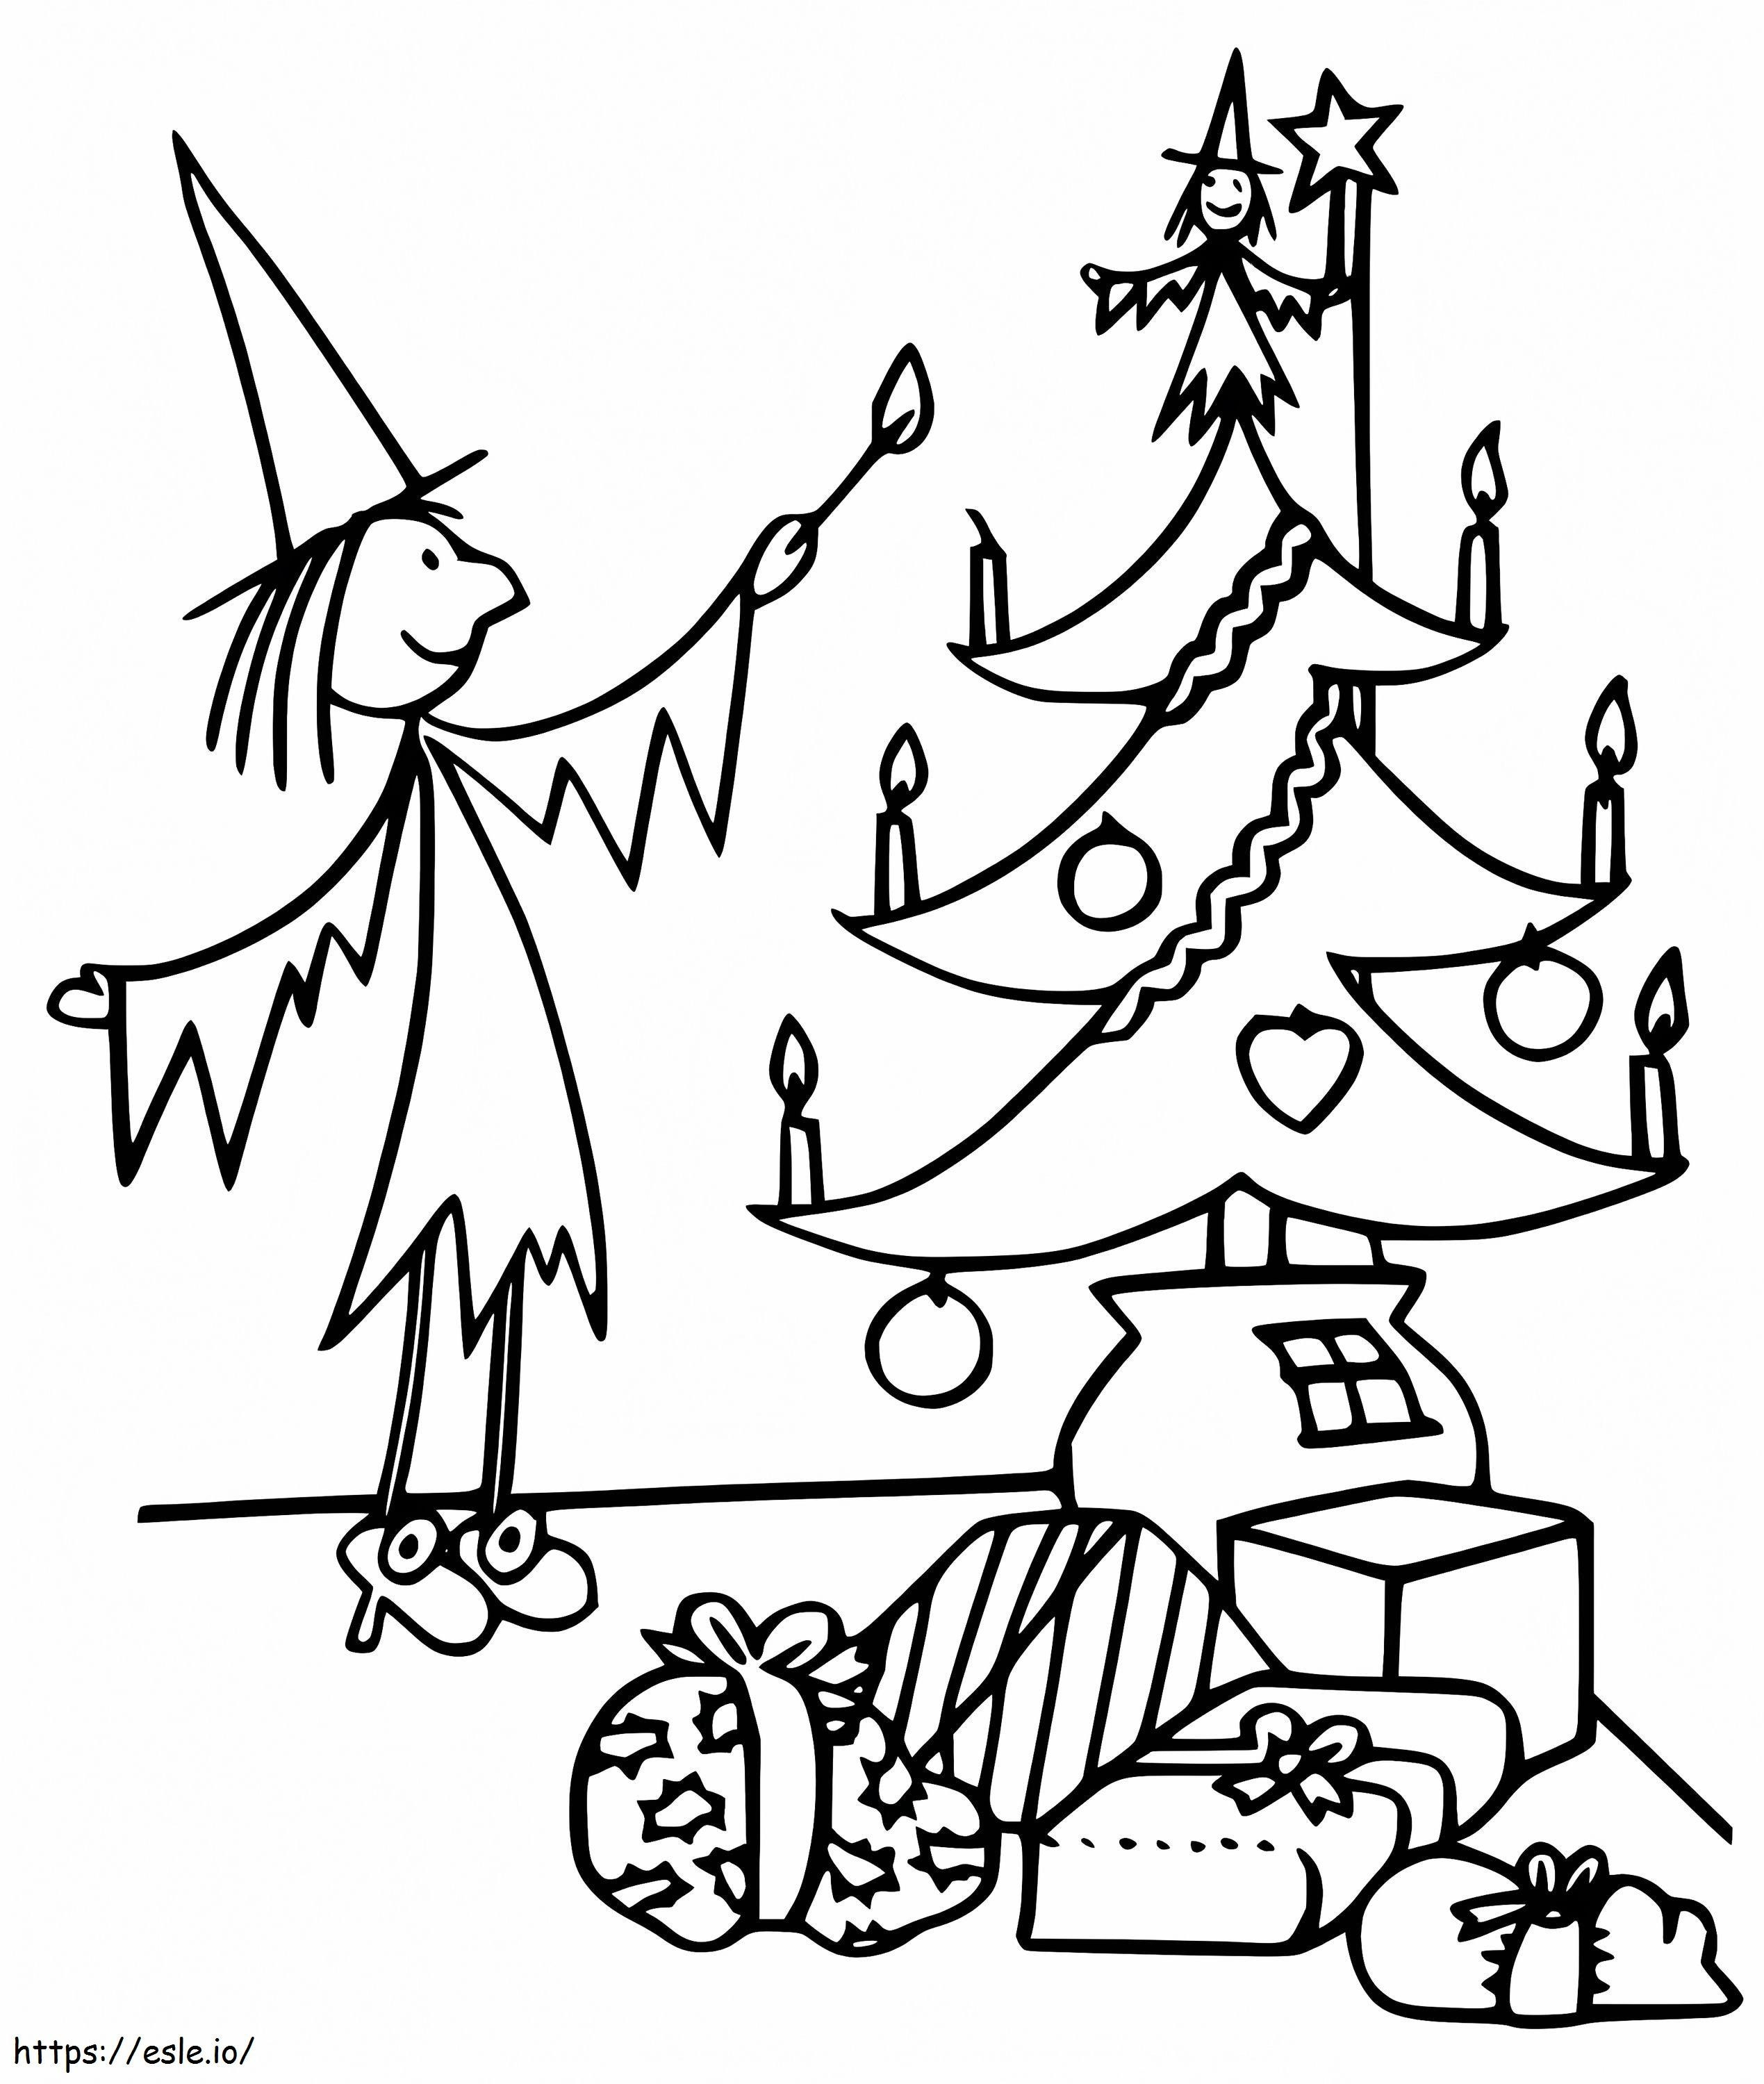 Coloriage Meg et l'arbre de Noël à imprimer dessin